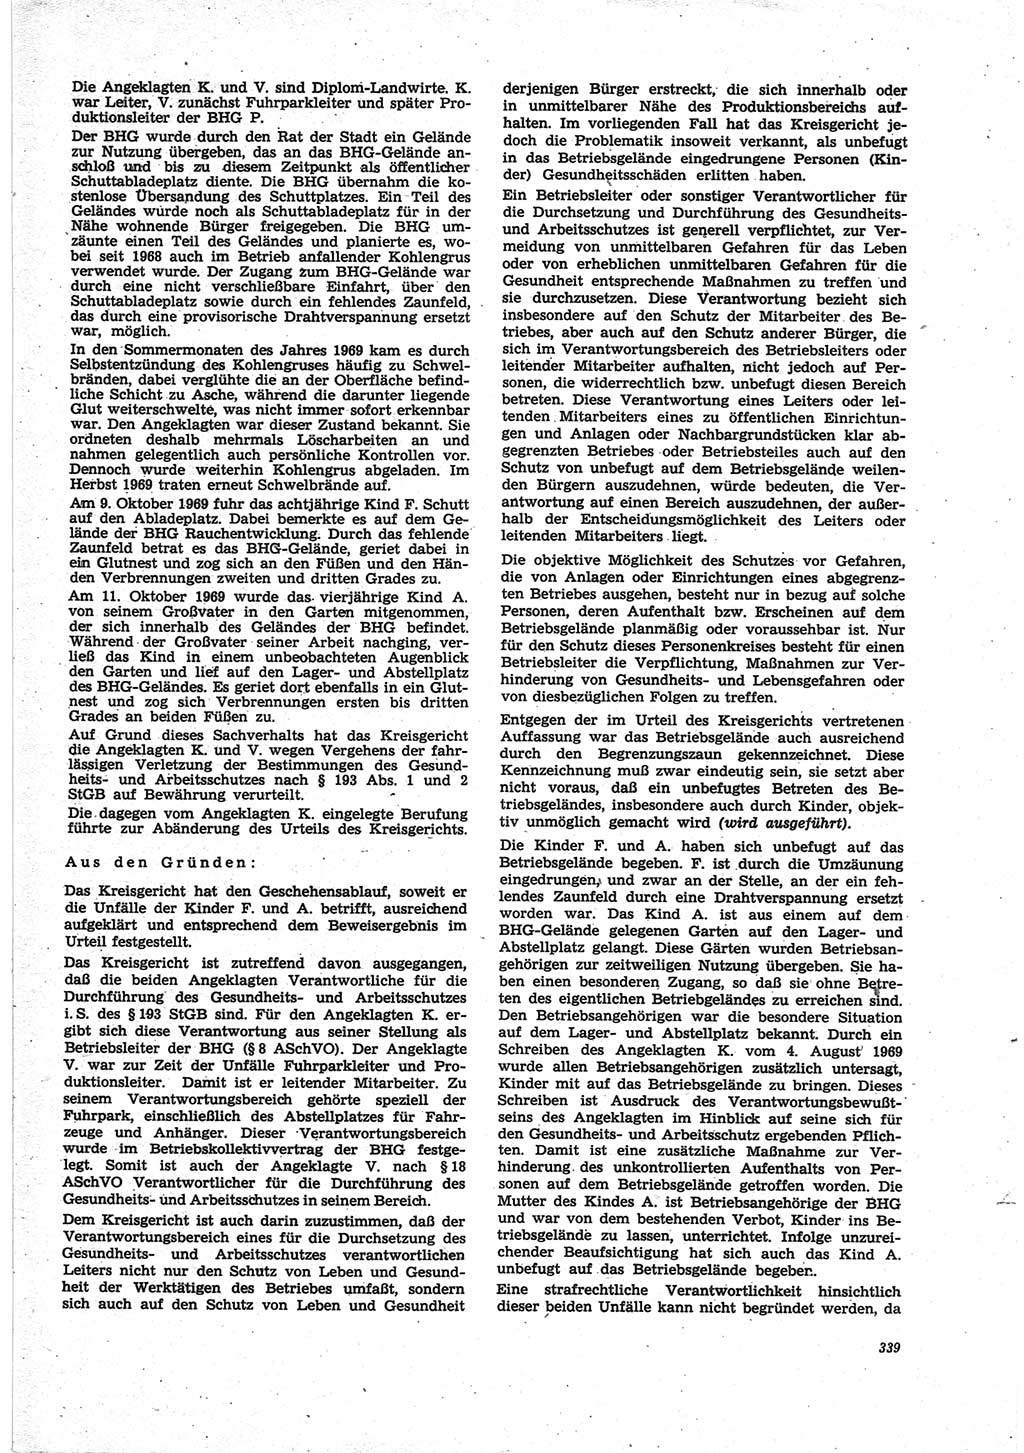 Neue Justiz (NJ), Zeitschrift für Recht und Rechtswissenschaft [Deutsche Demokratische Republik (DDR)], 25. Jahrgang 1971, Seite 339 (NJ DDR 1971, S. 339)